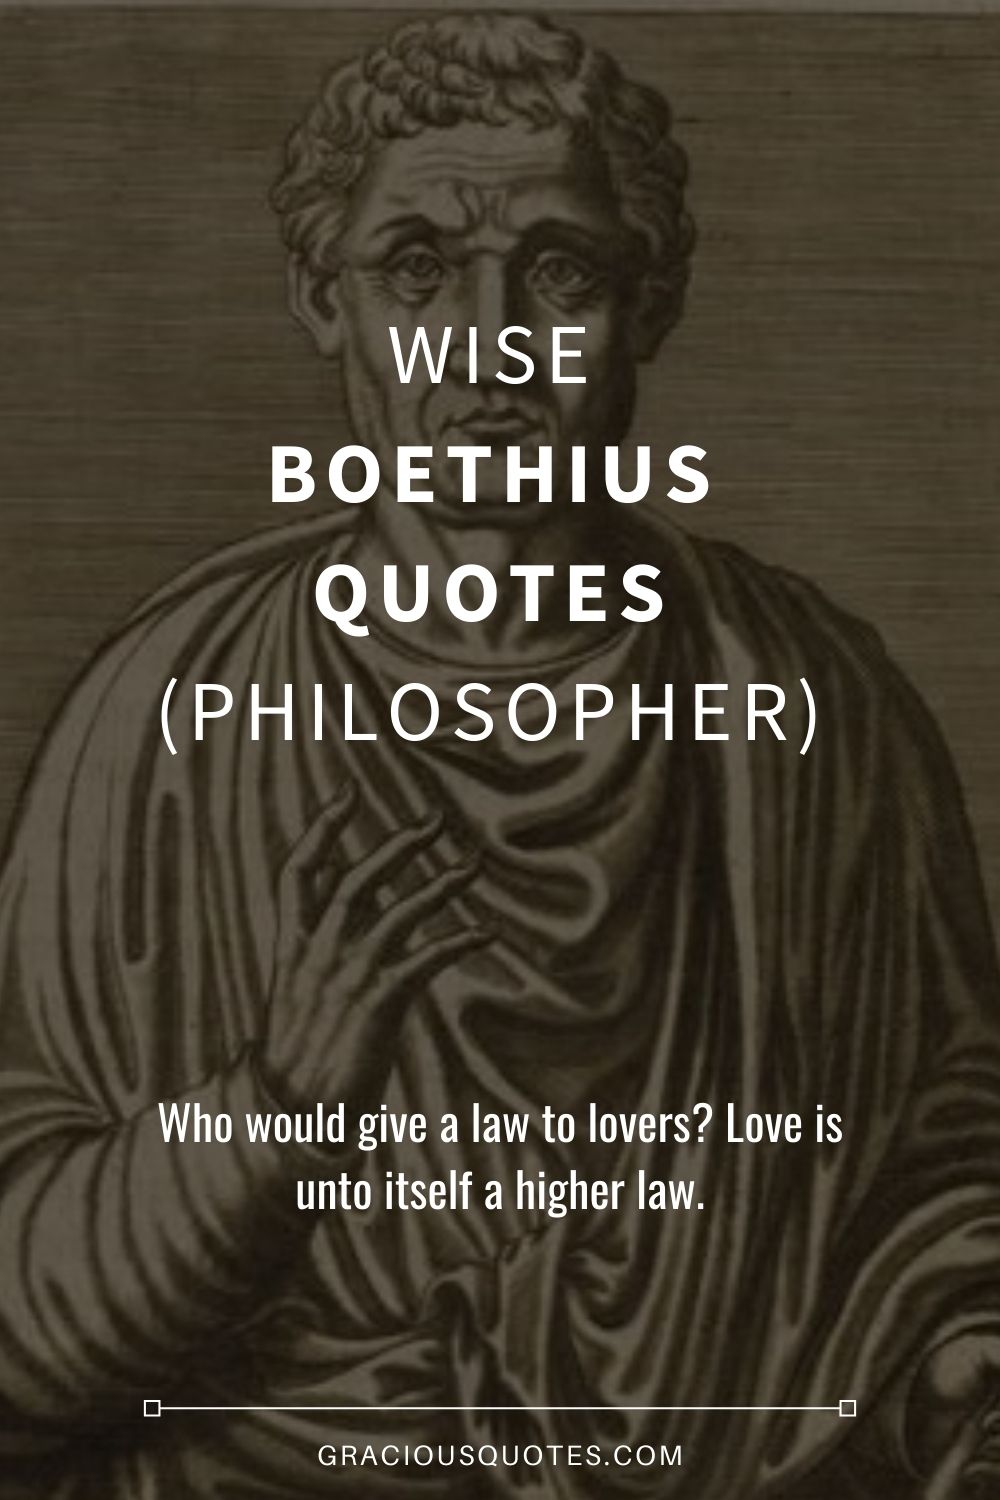 Wise Boethius Quotes (PHILOSOPHER) - Gracious Quotes